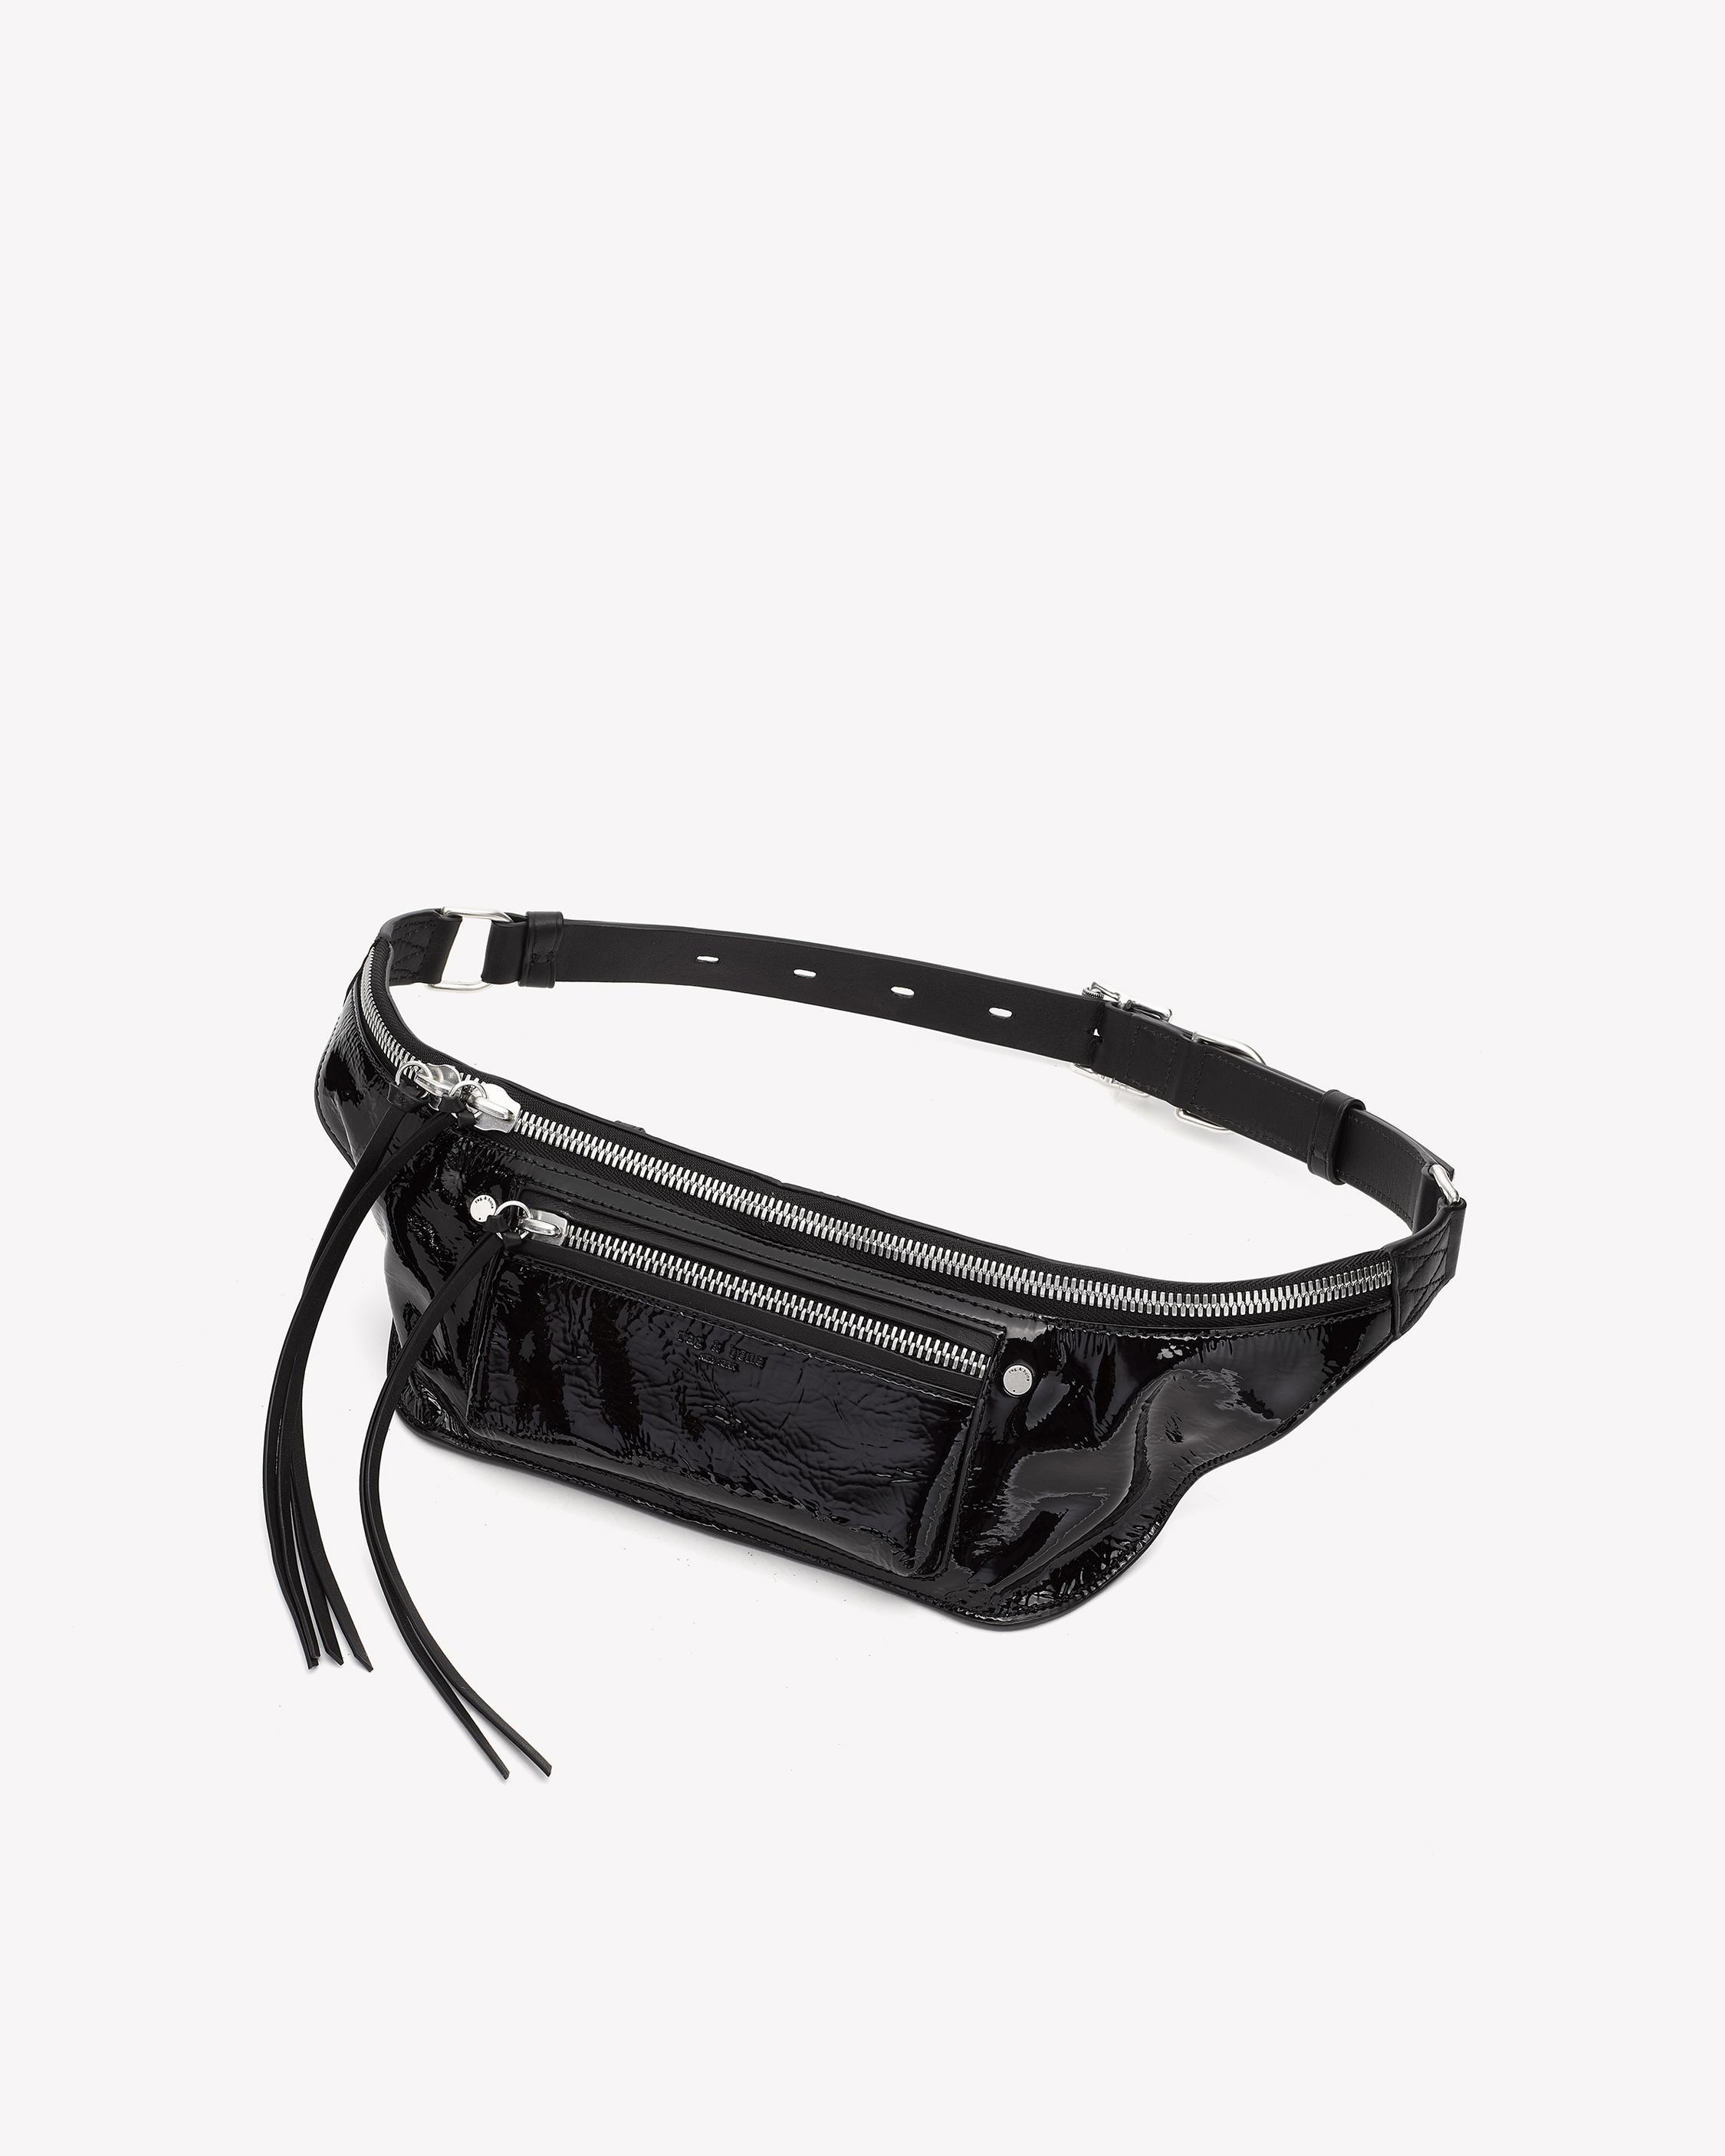 Fanny Pack/ Belt Bag Pattern – Leather Bag Pattern